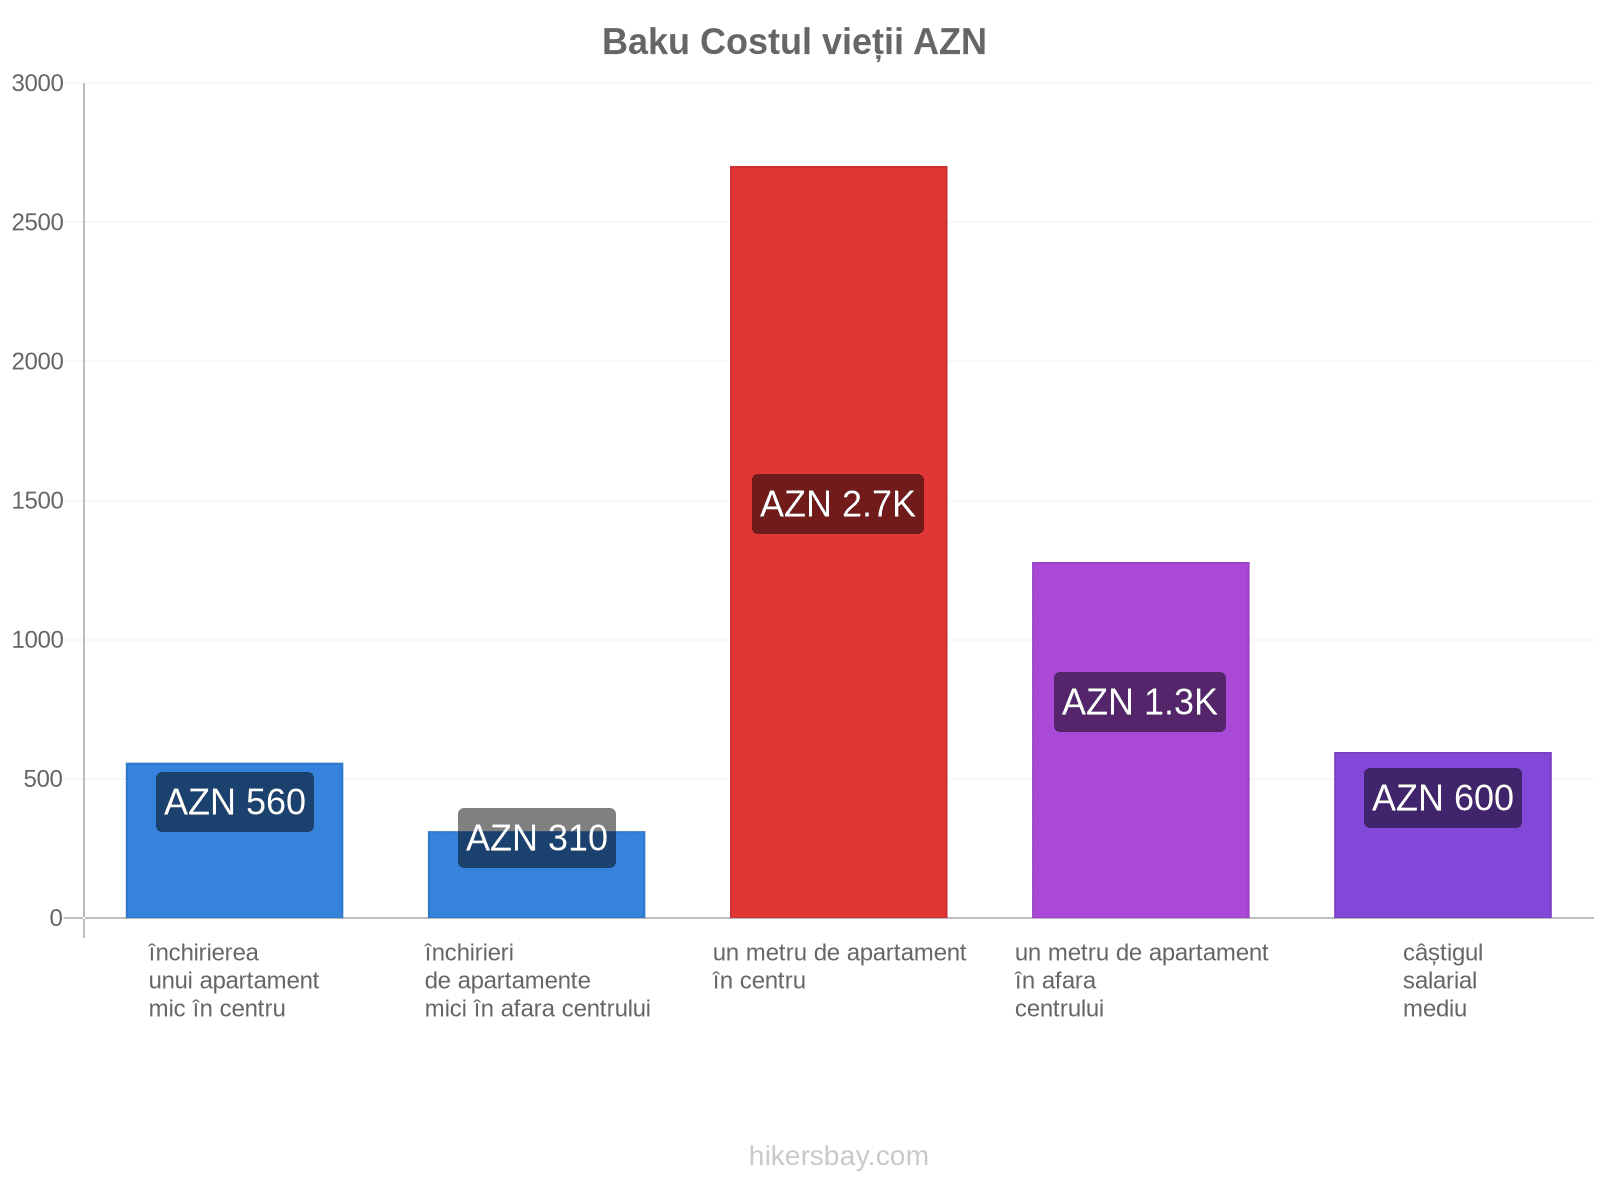 Baku costul vieții hikersbay.com